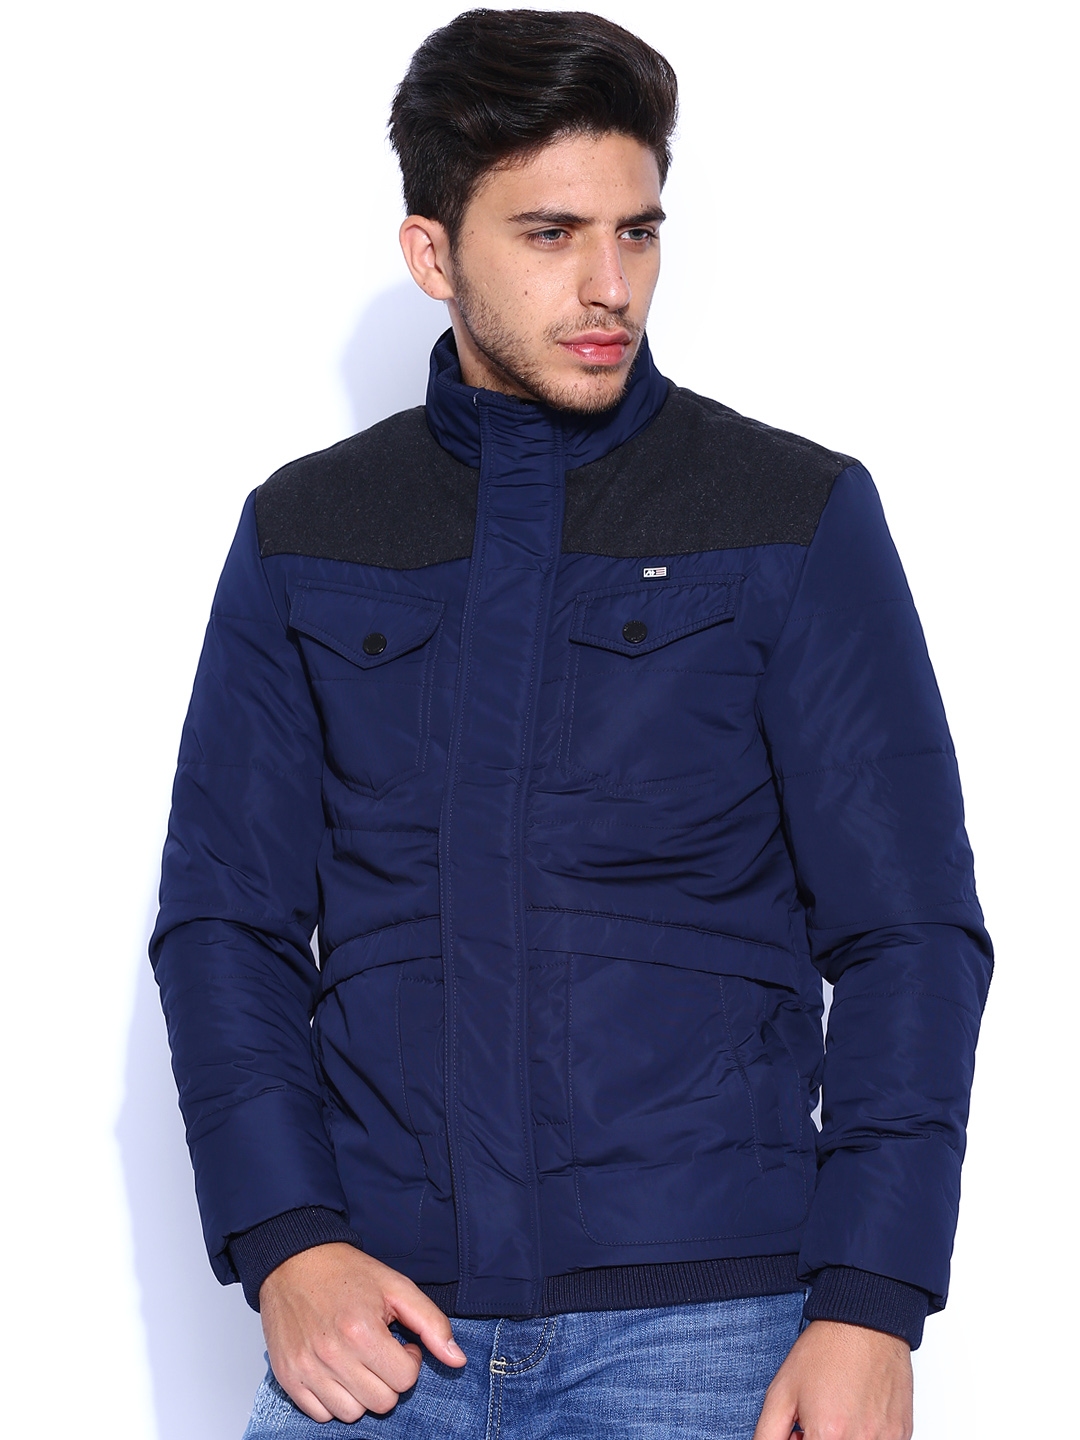 Buy Arrow Sport Blue Padded Jacket - Jackets for Men 507356 | Myntra